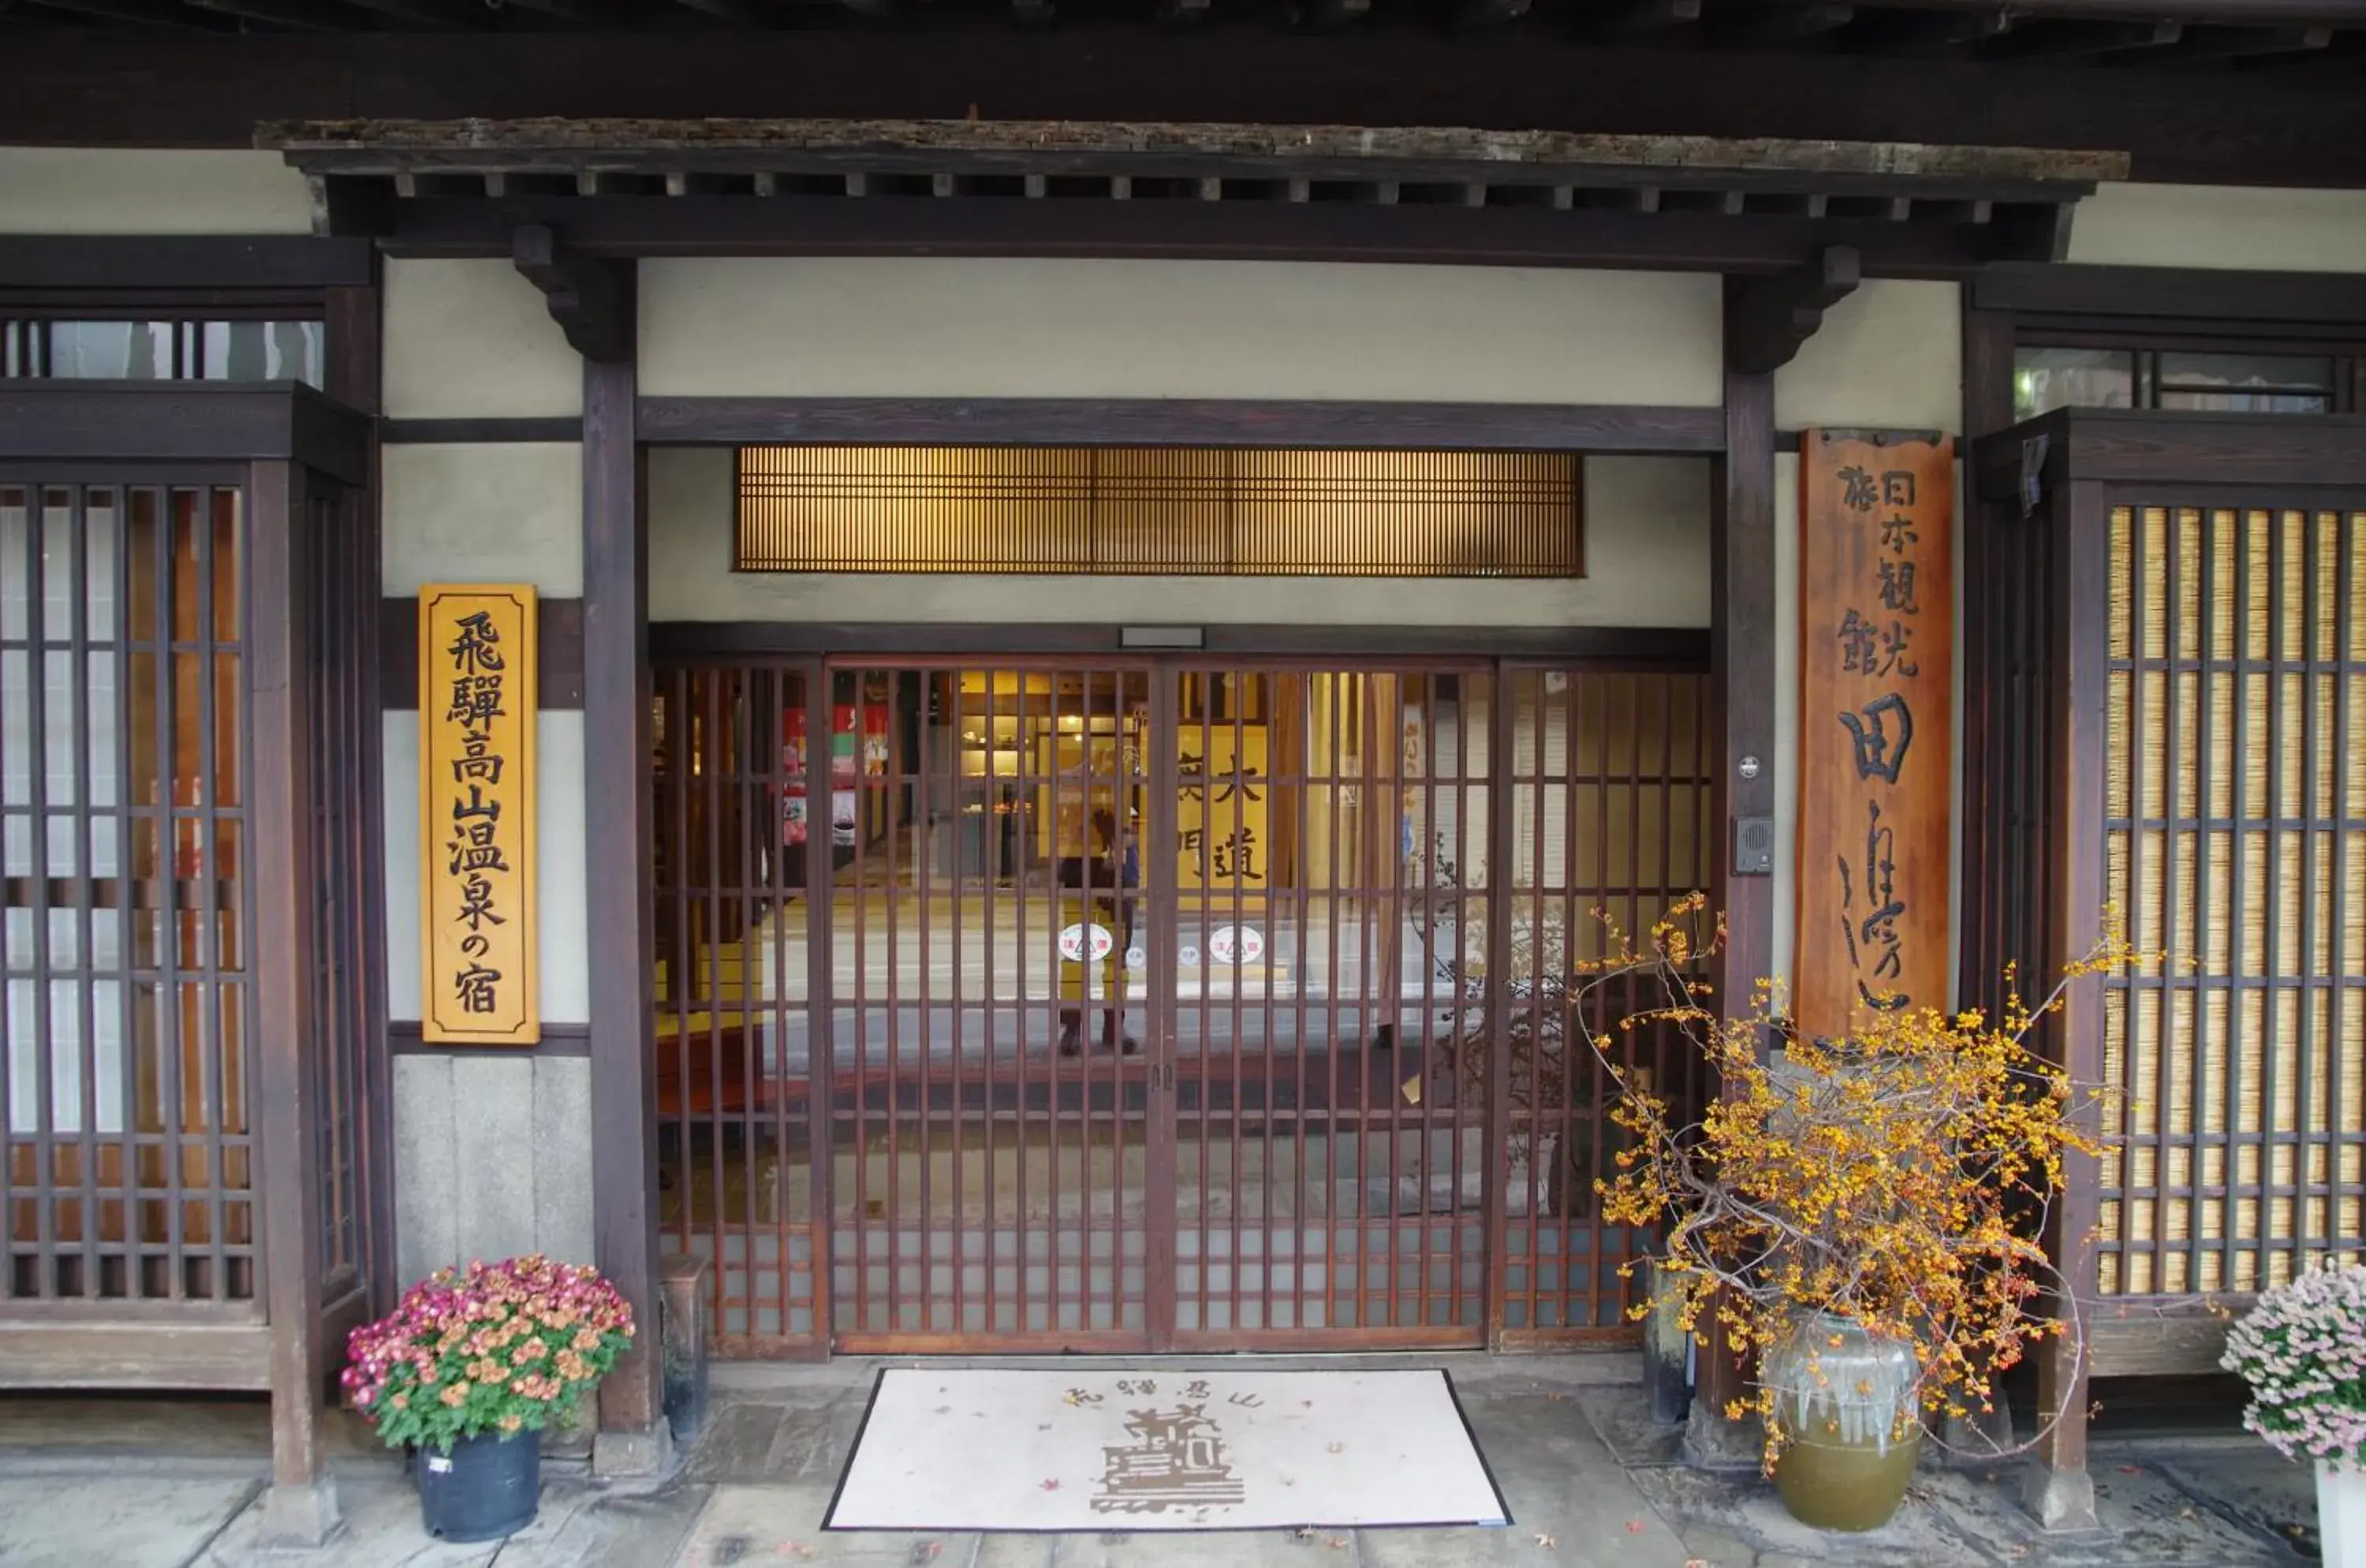 Facade/entrance in Ryokan Tanabe